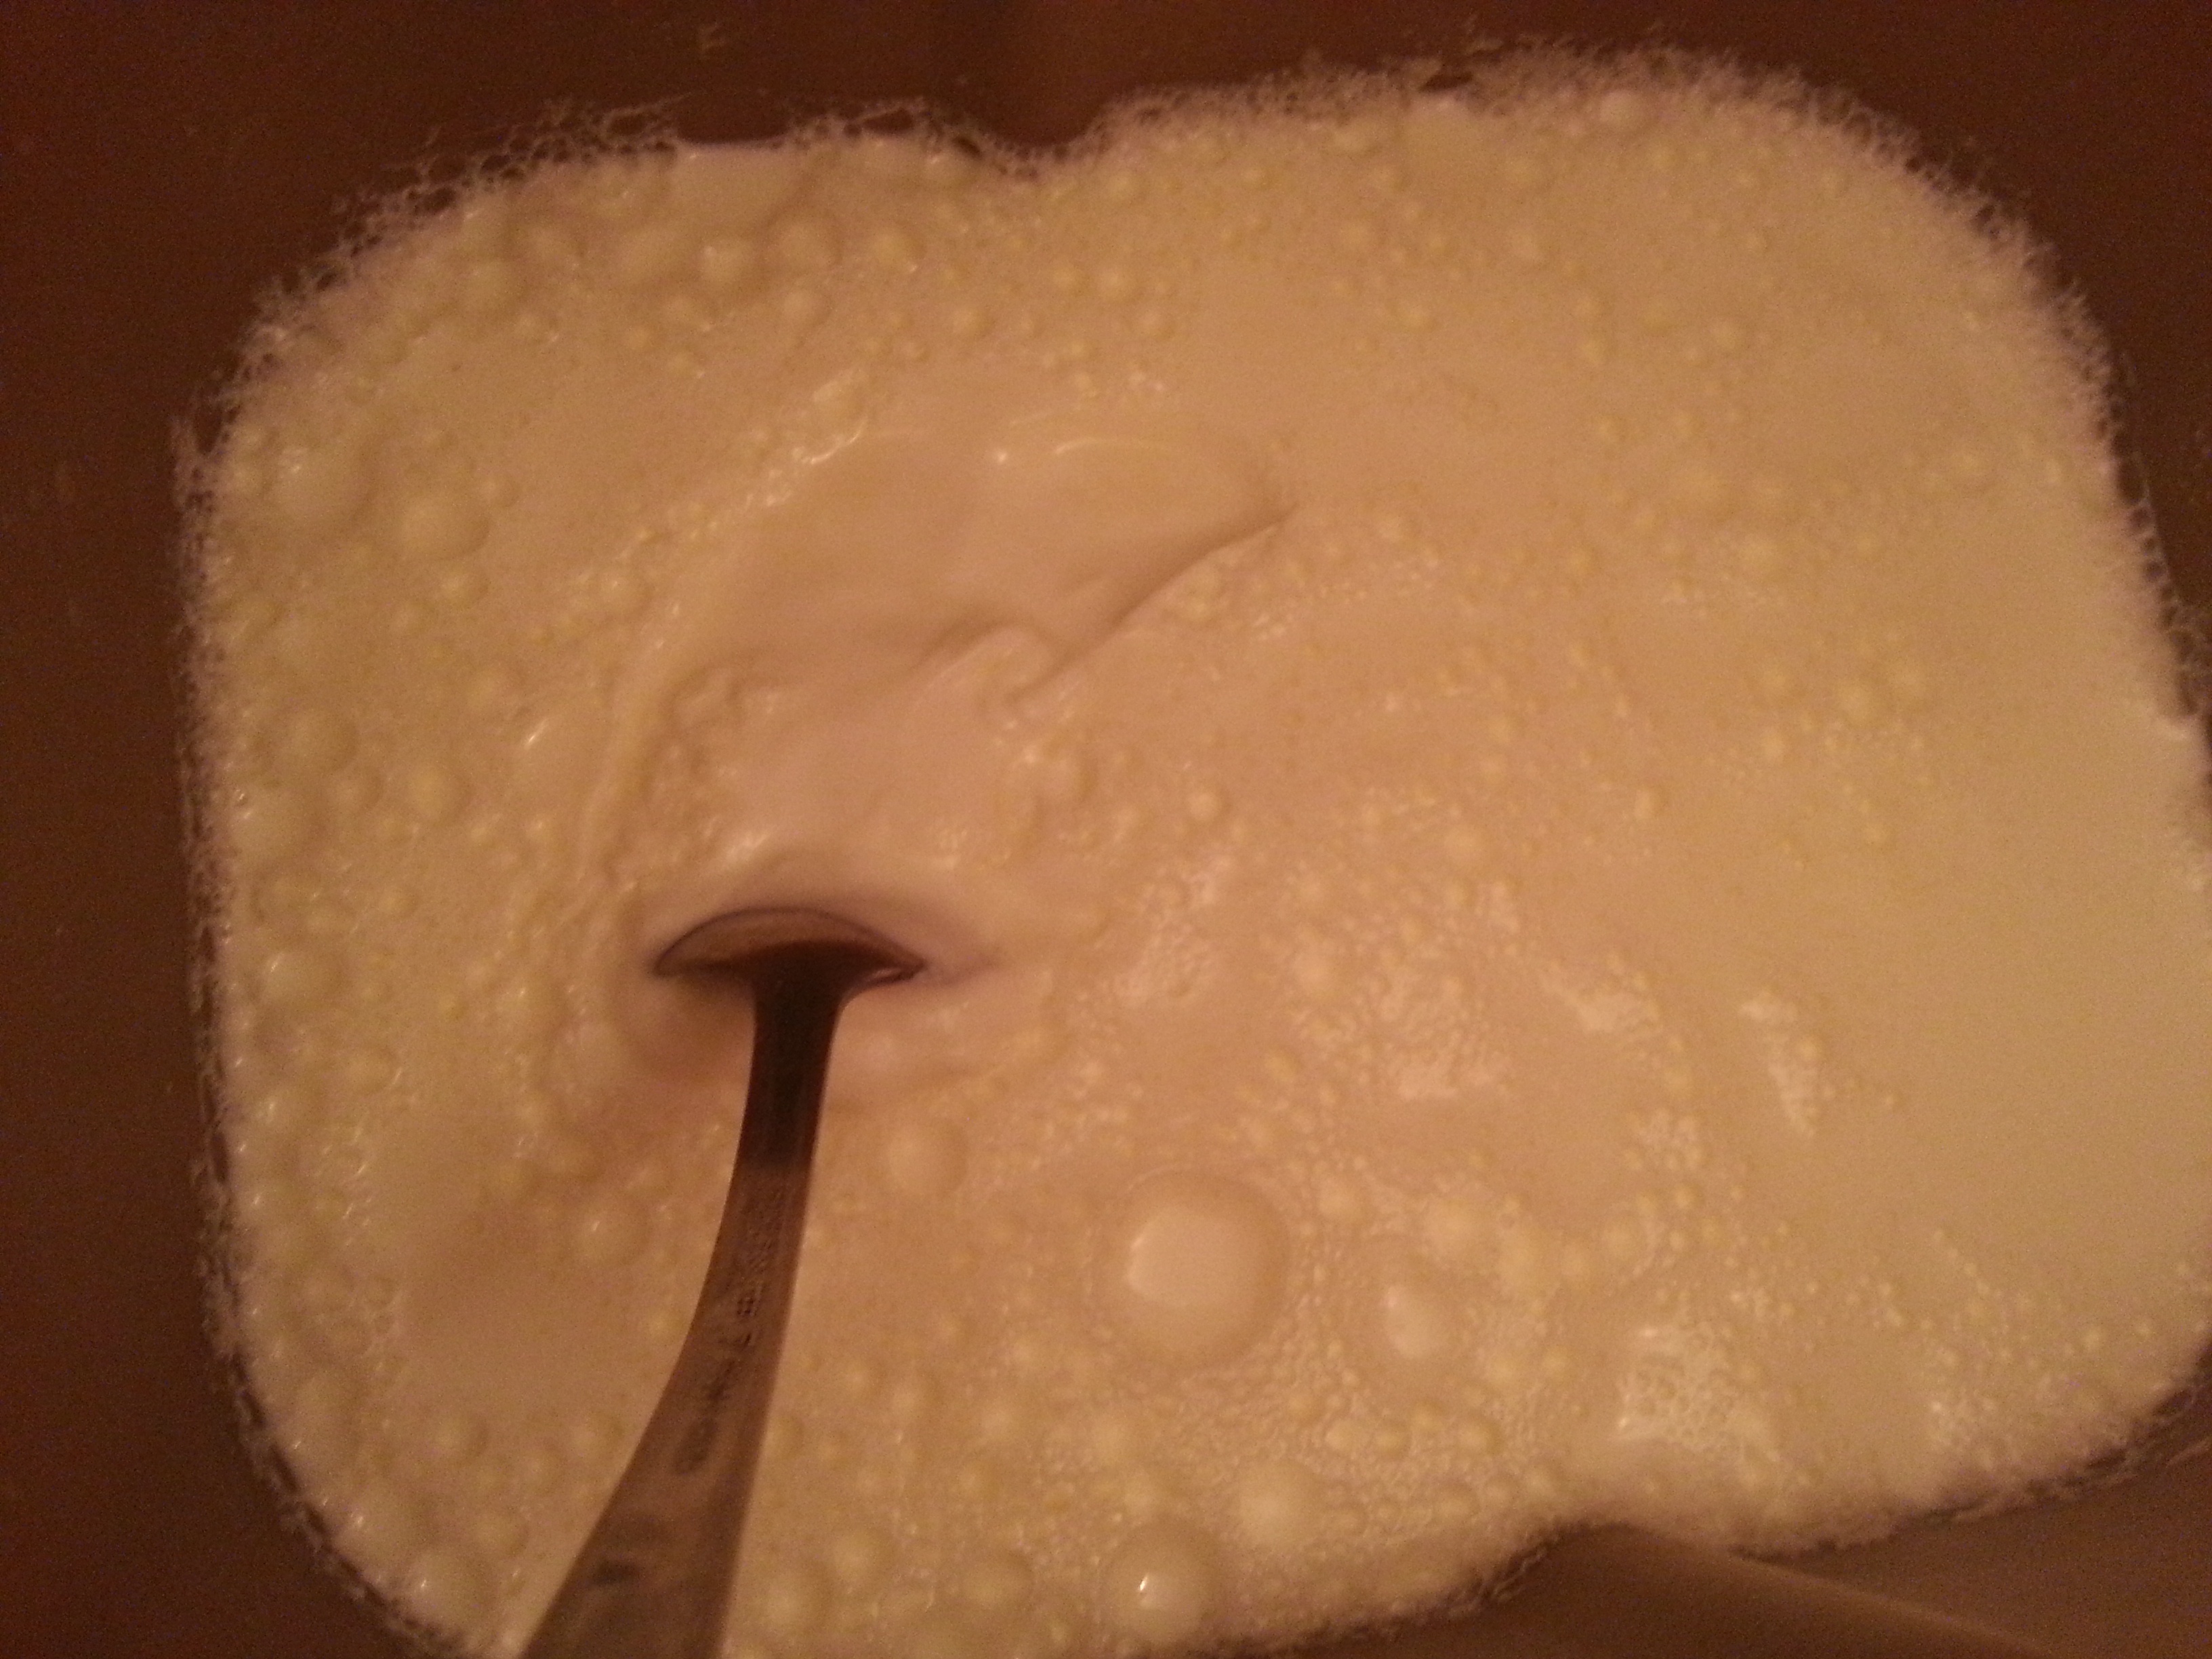 面包机自制酸奶